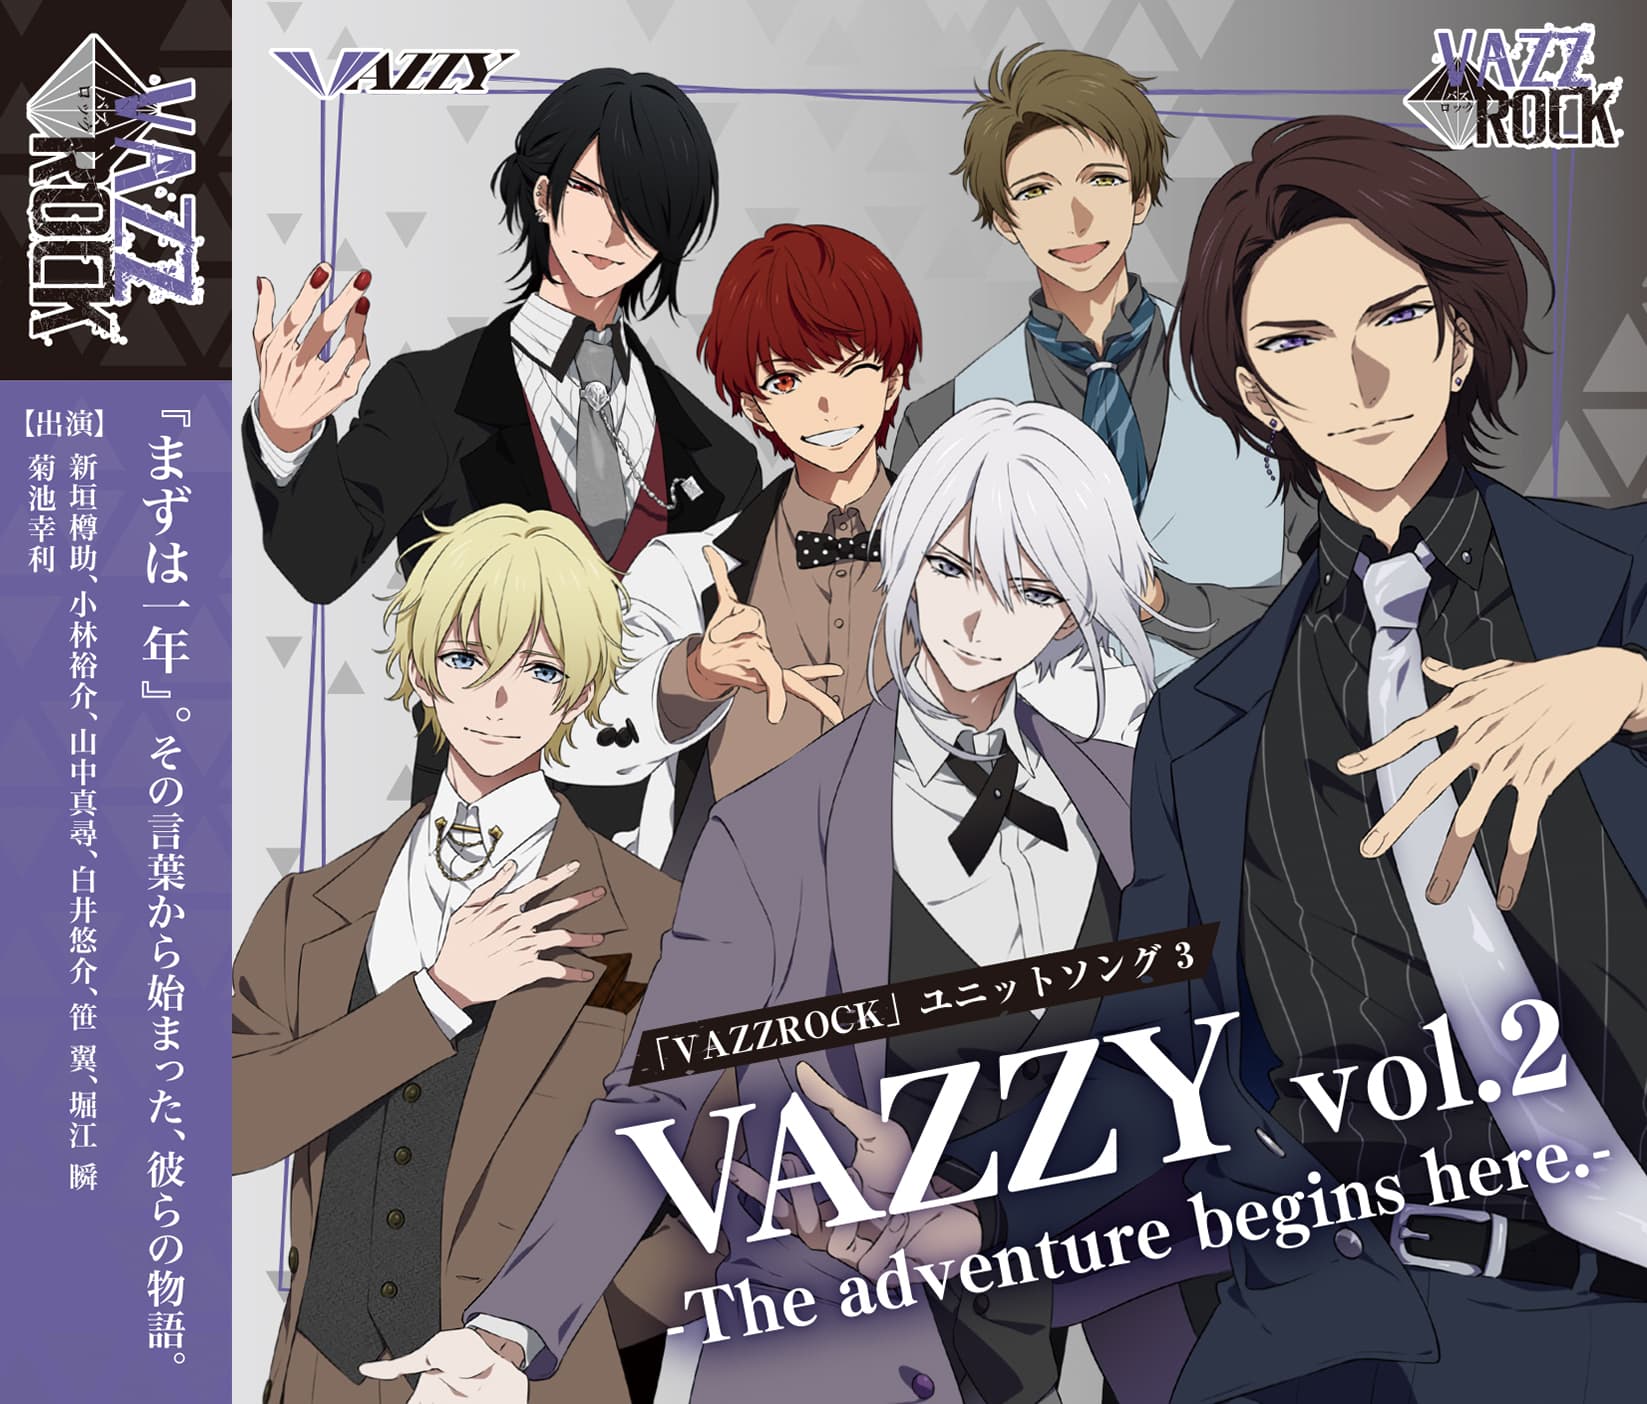 「VAZZROCK」ユニットソング③「VAZZY vol.2 -The adventure begins here.-」